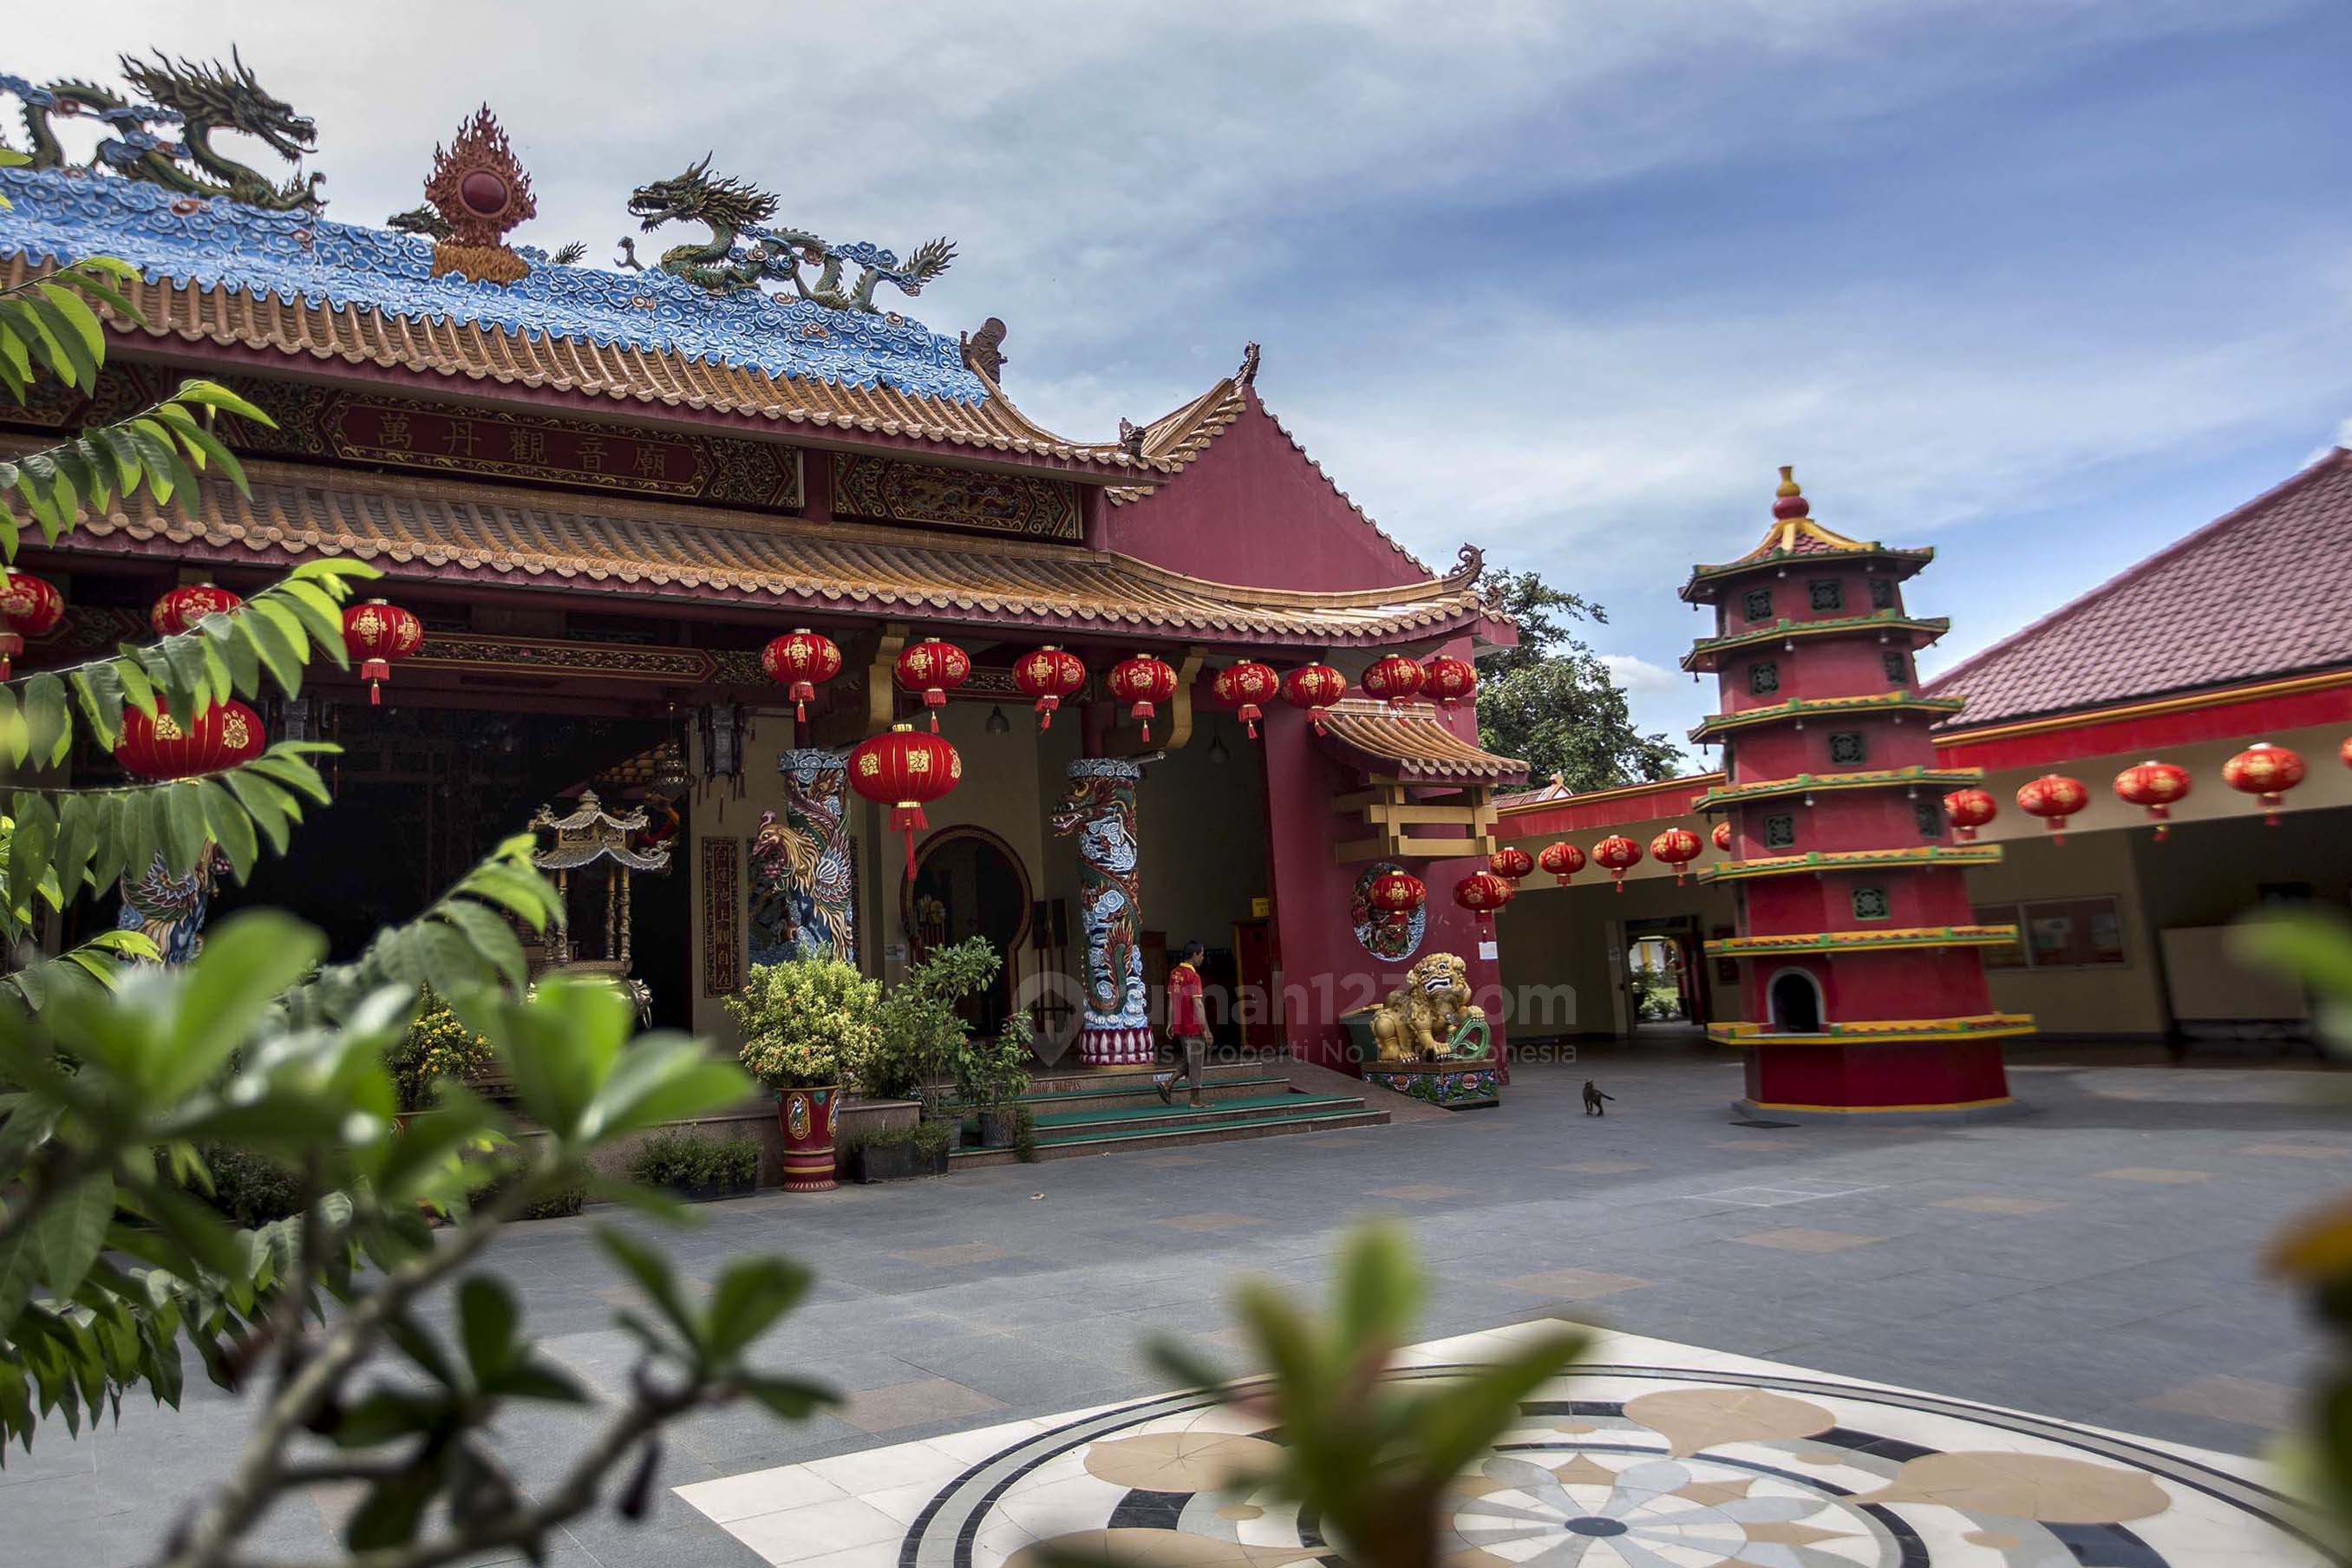 Harga Tiket Masuk Ke Vihara Avalokitesvara Tangerang